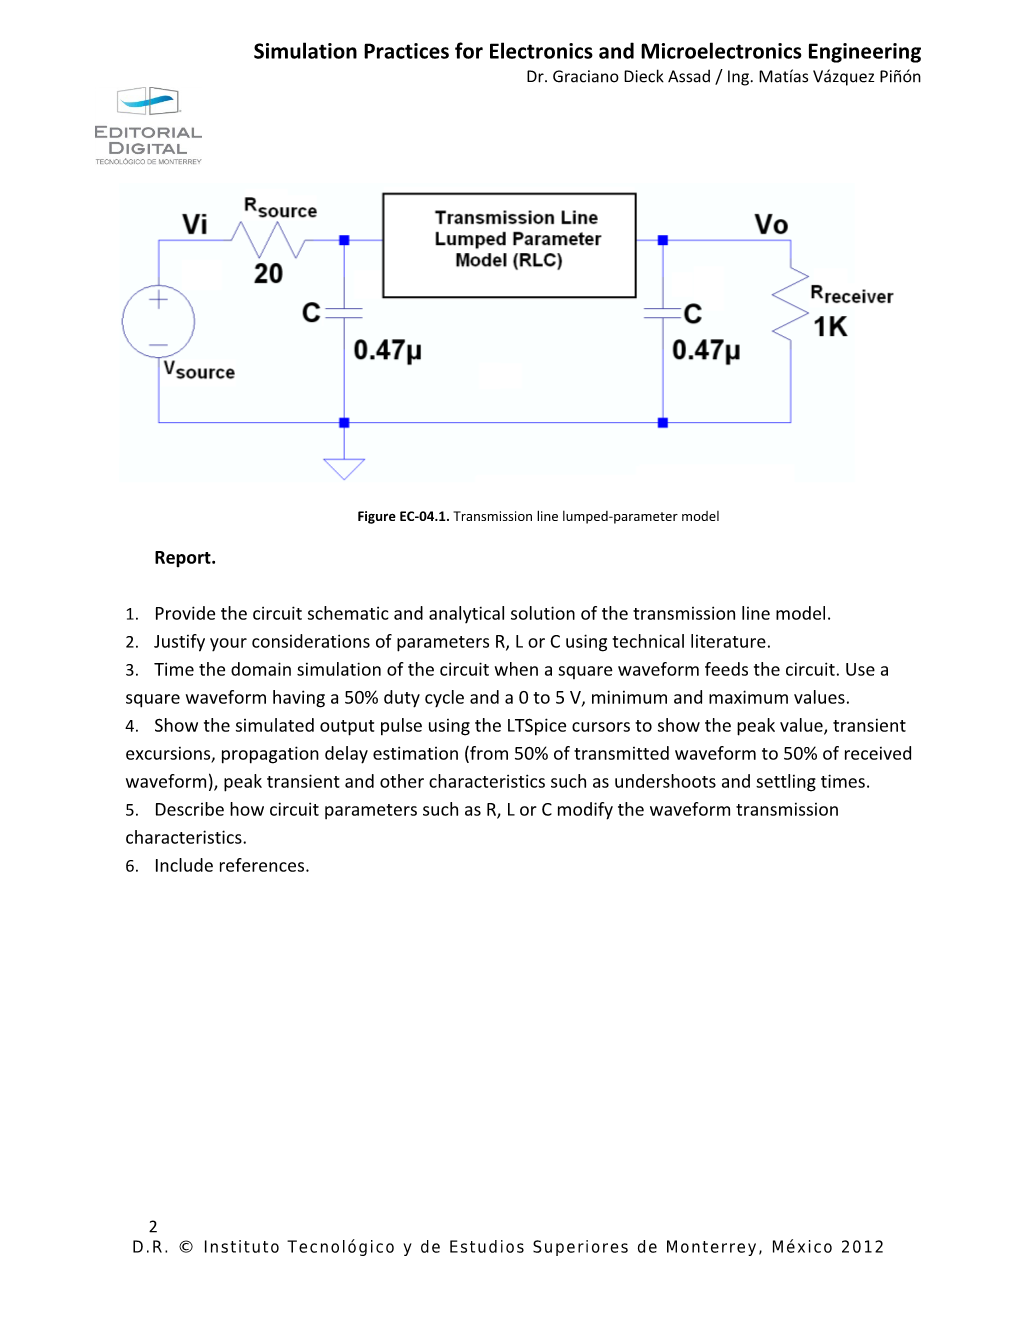 EC-04. Transmission Line Lumped Parameter Model